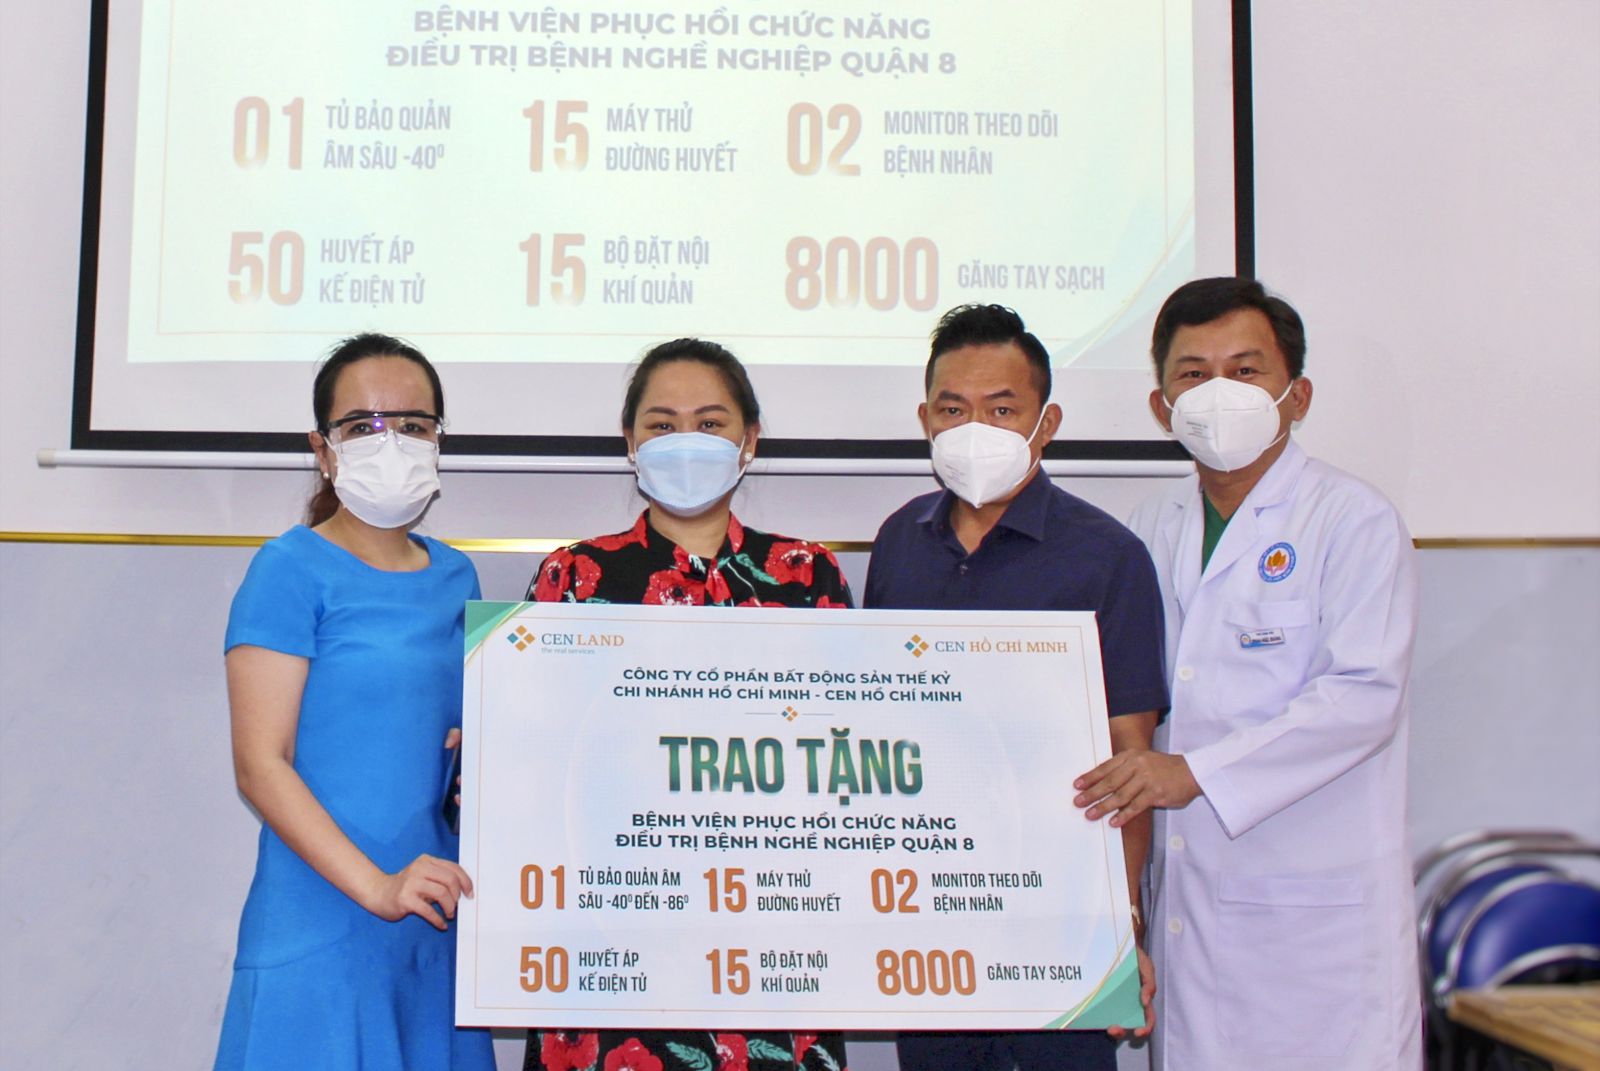 Ban Giám đốc Cen Hồ Chí Minh tặng thiết bị y tế cho Bệnh viện Phục hồi Chức năng - Điều trịp/Bệnh Nghề nghiệp.